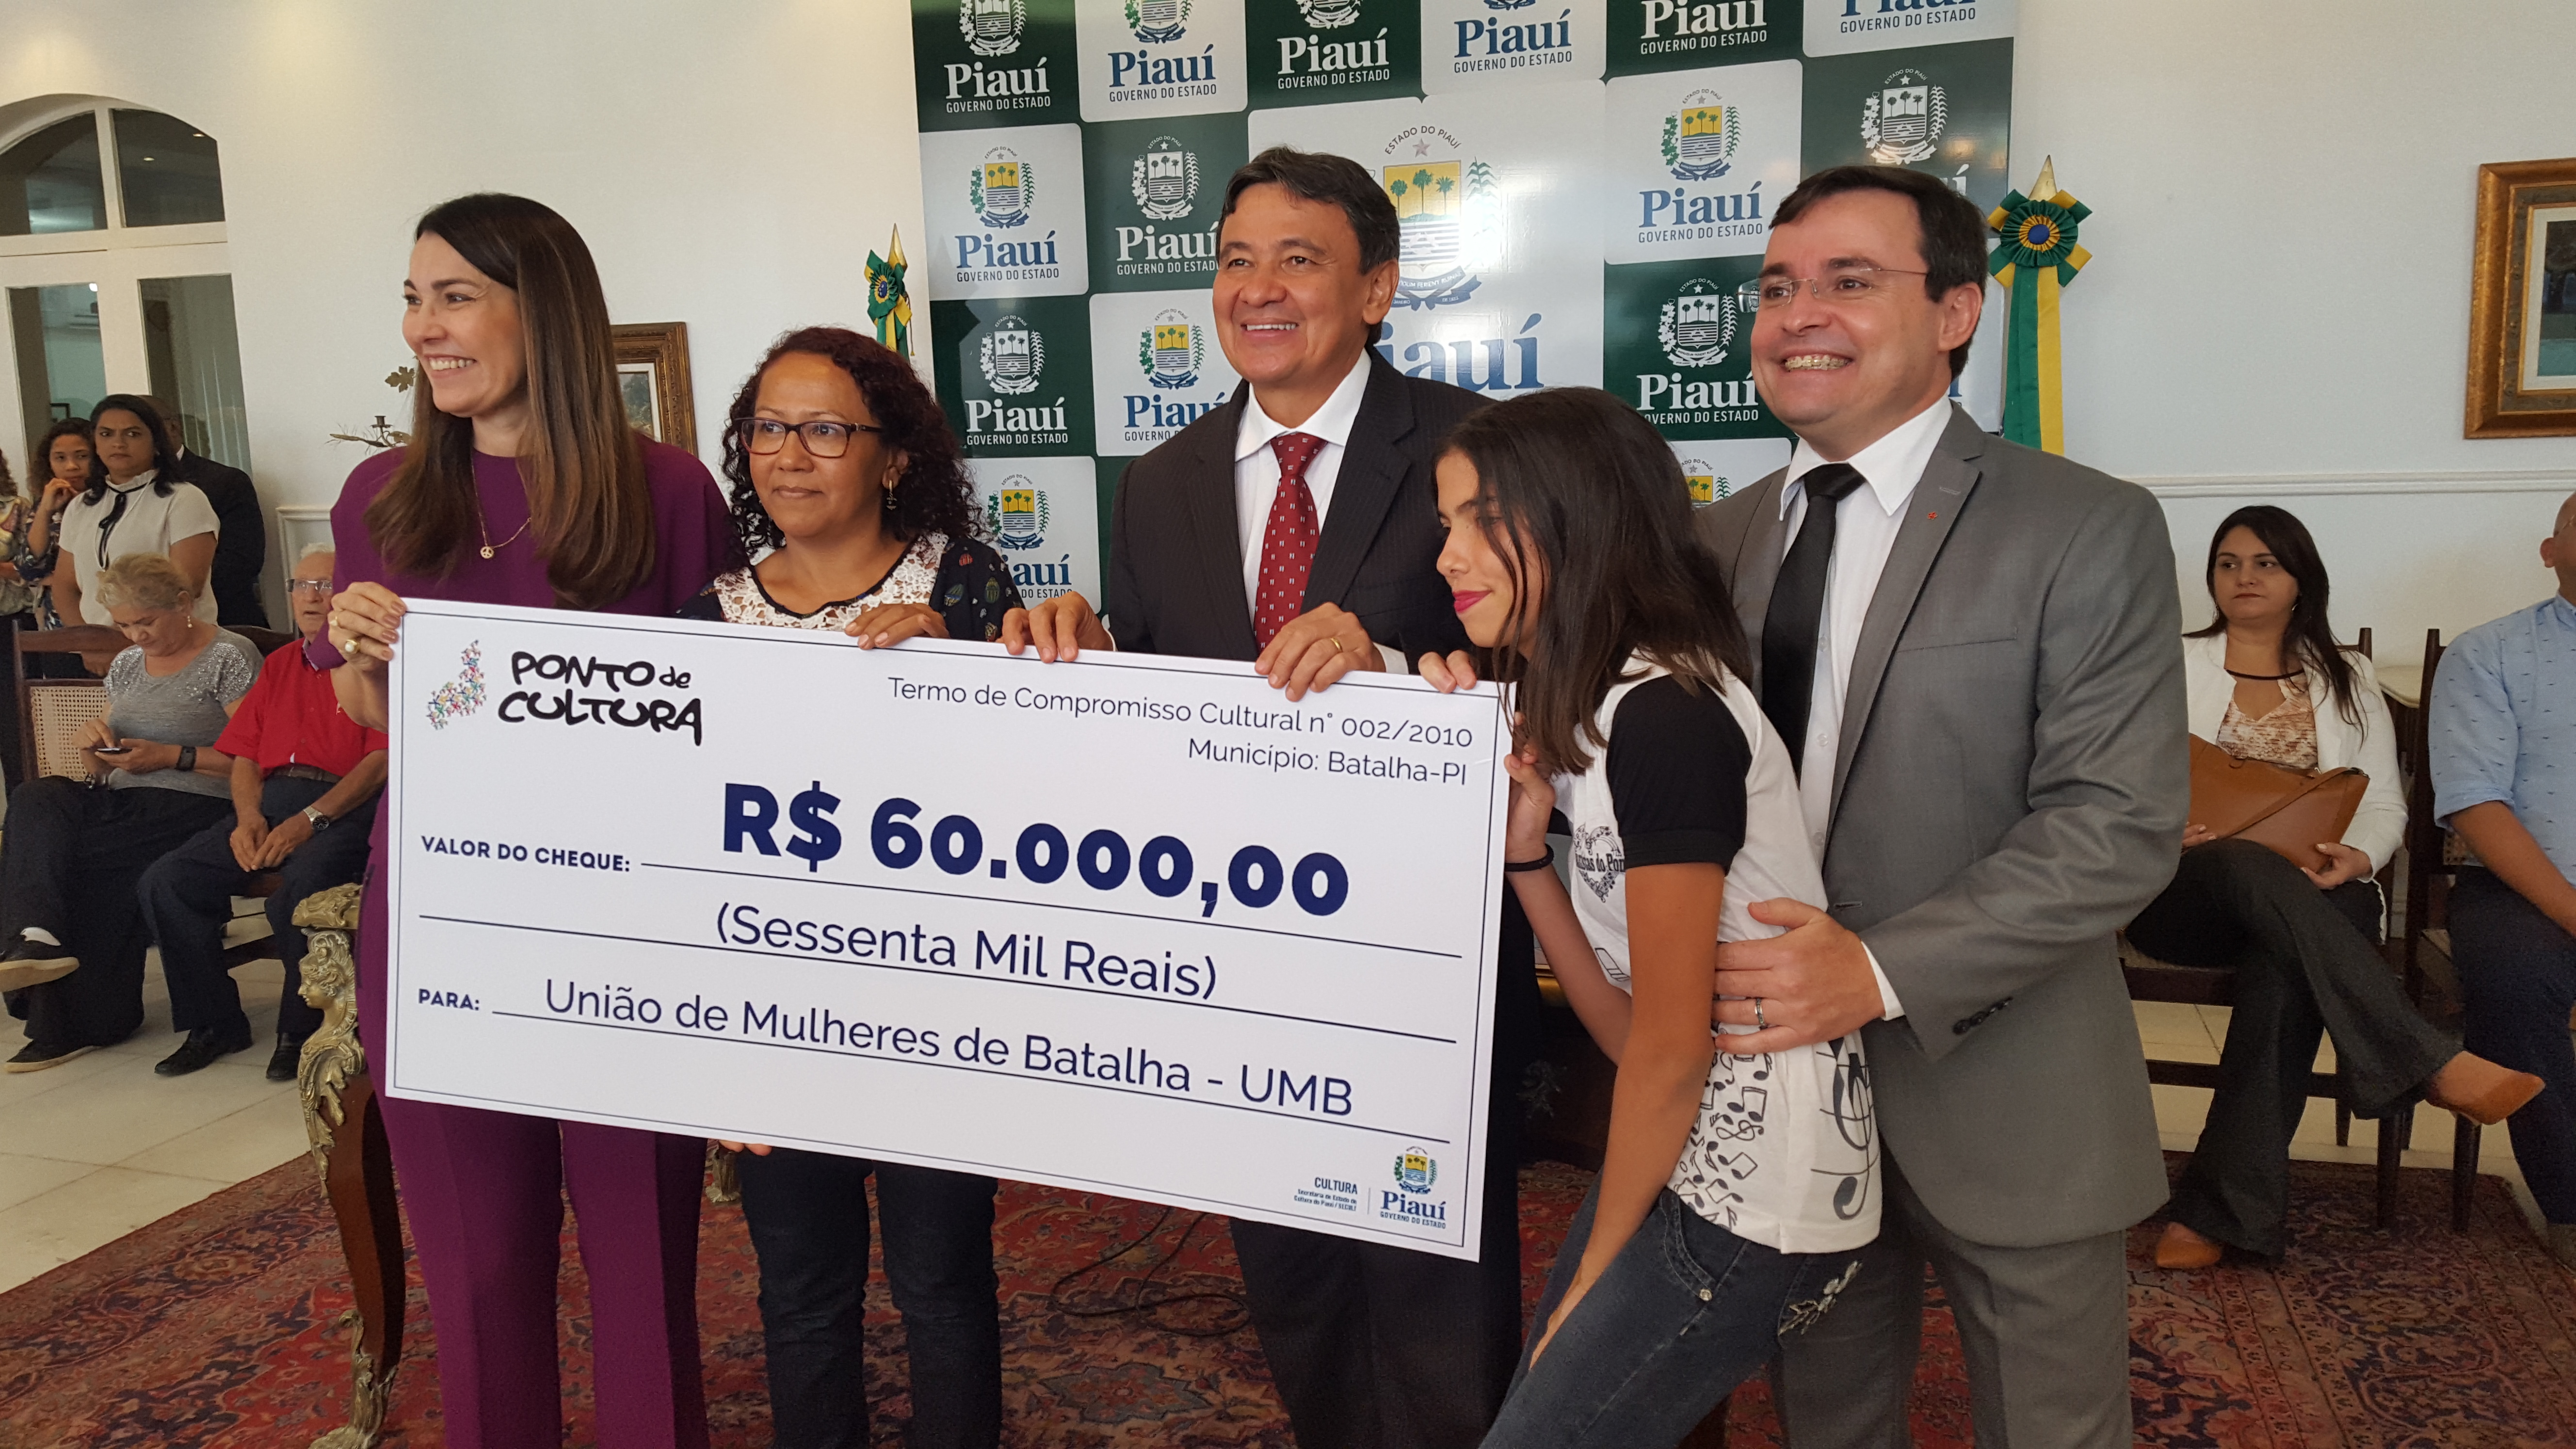 Piauí contempla mais de 40 Pontos de Cultura com liberação de R$ 2,5 milhões